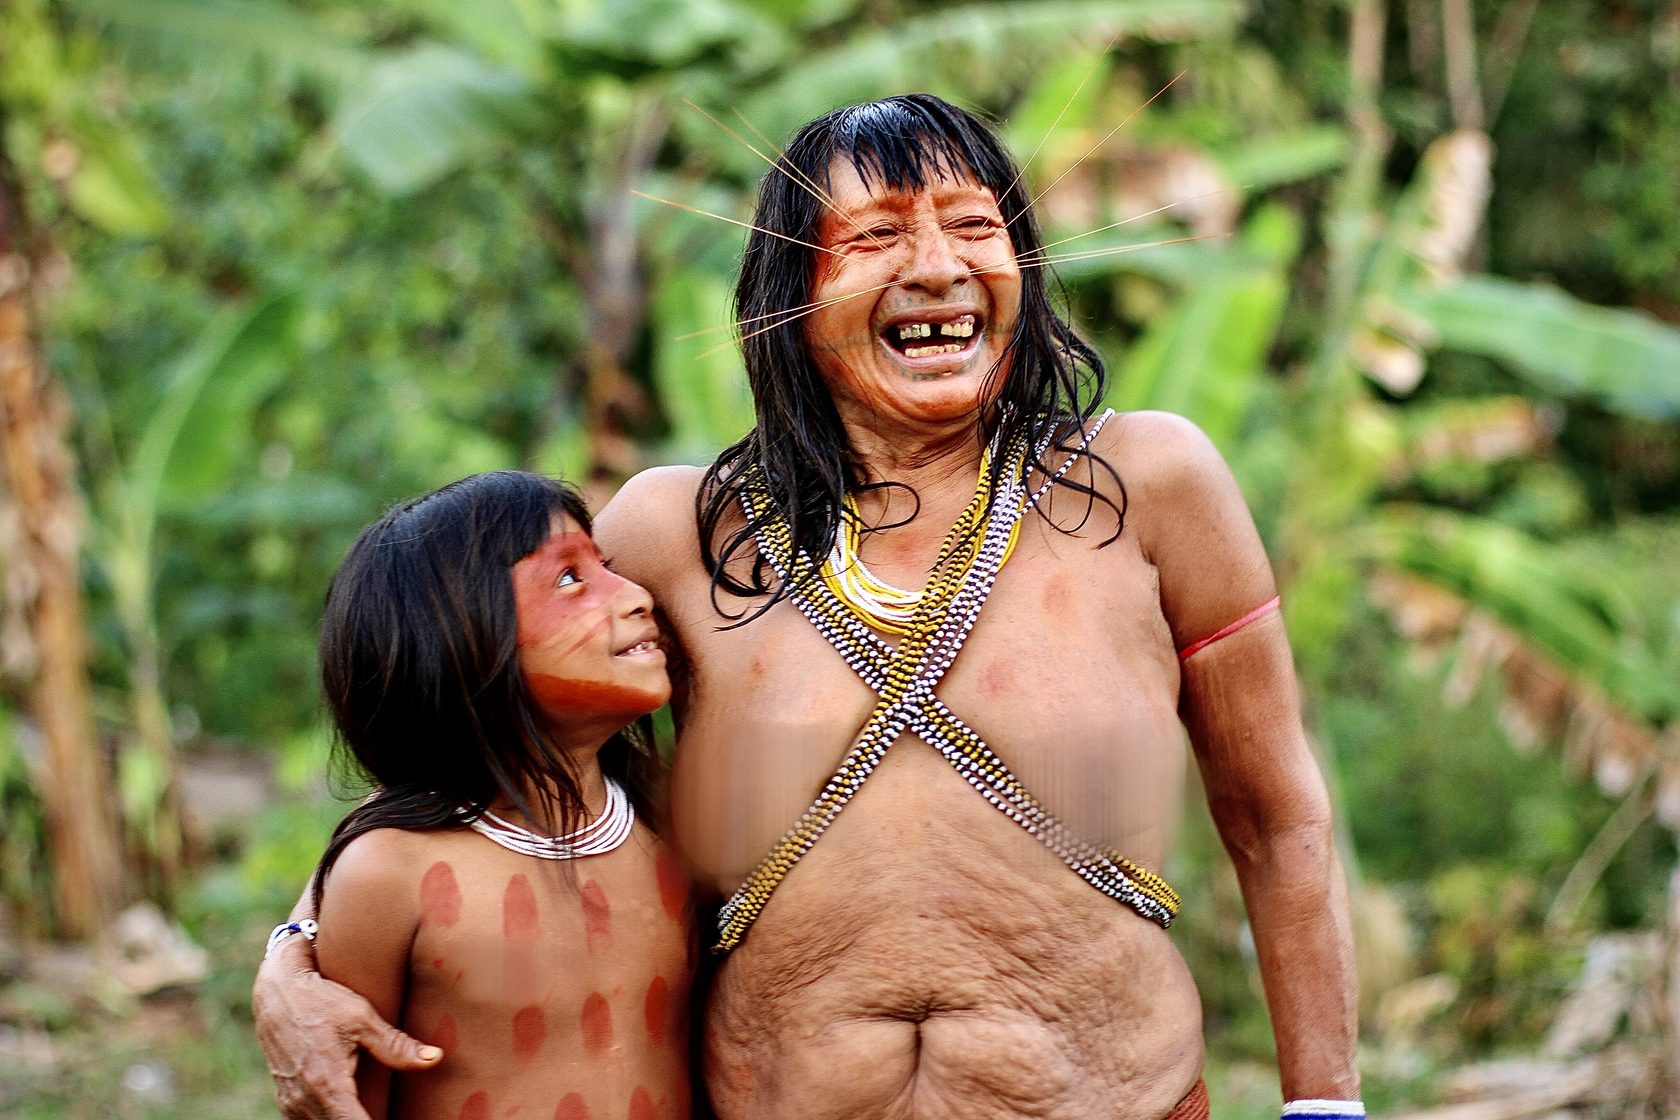 Женщины из  племени с обнаженными сиськами  (15 фото эротики)